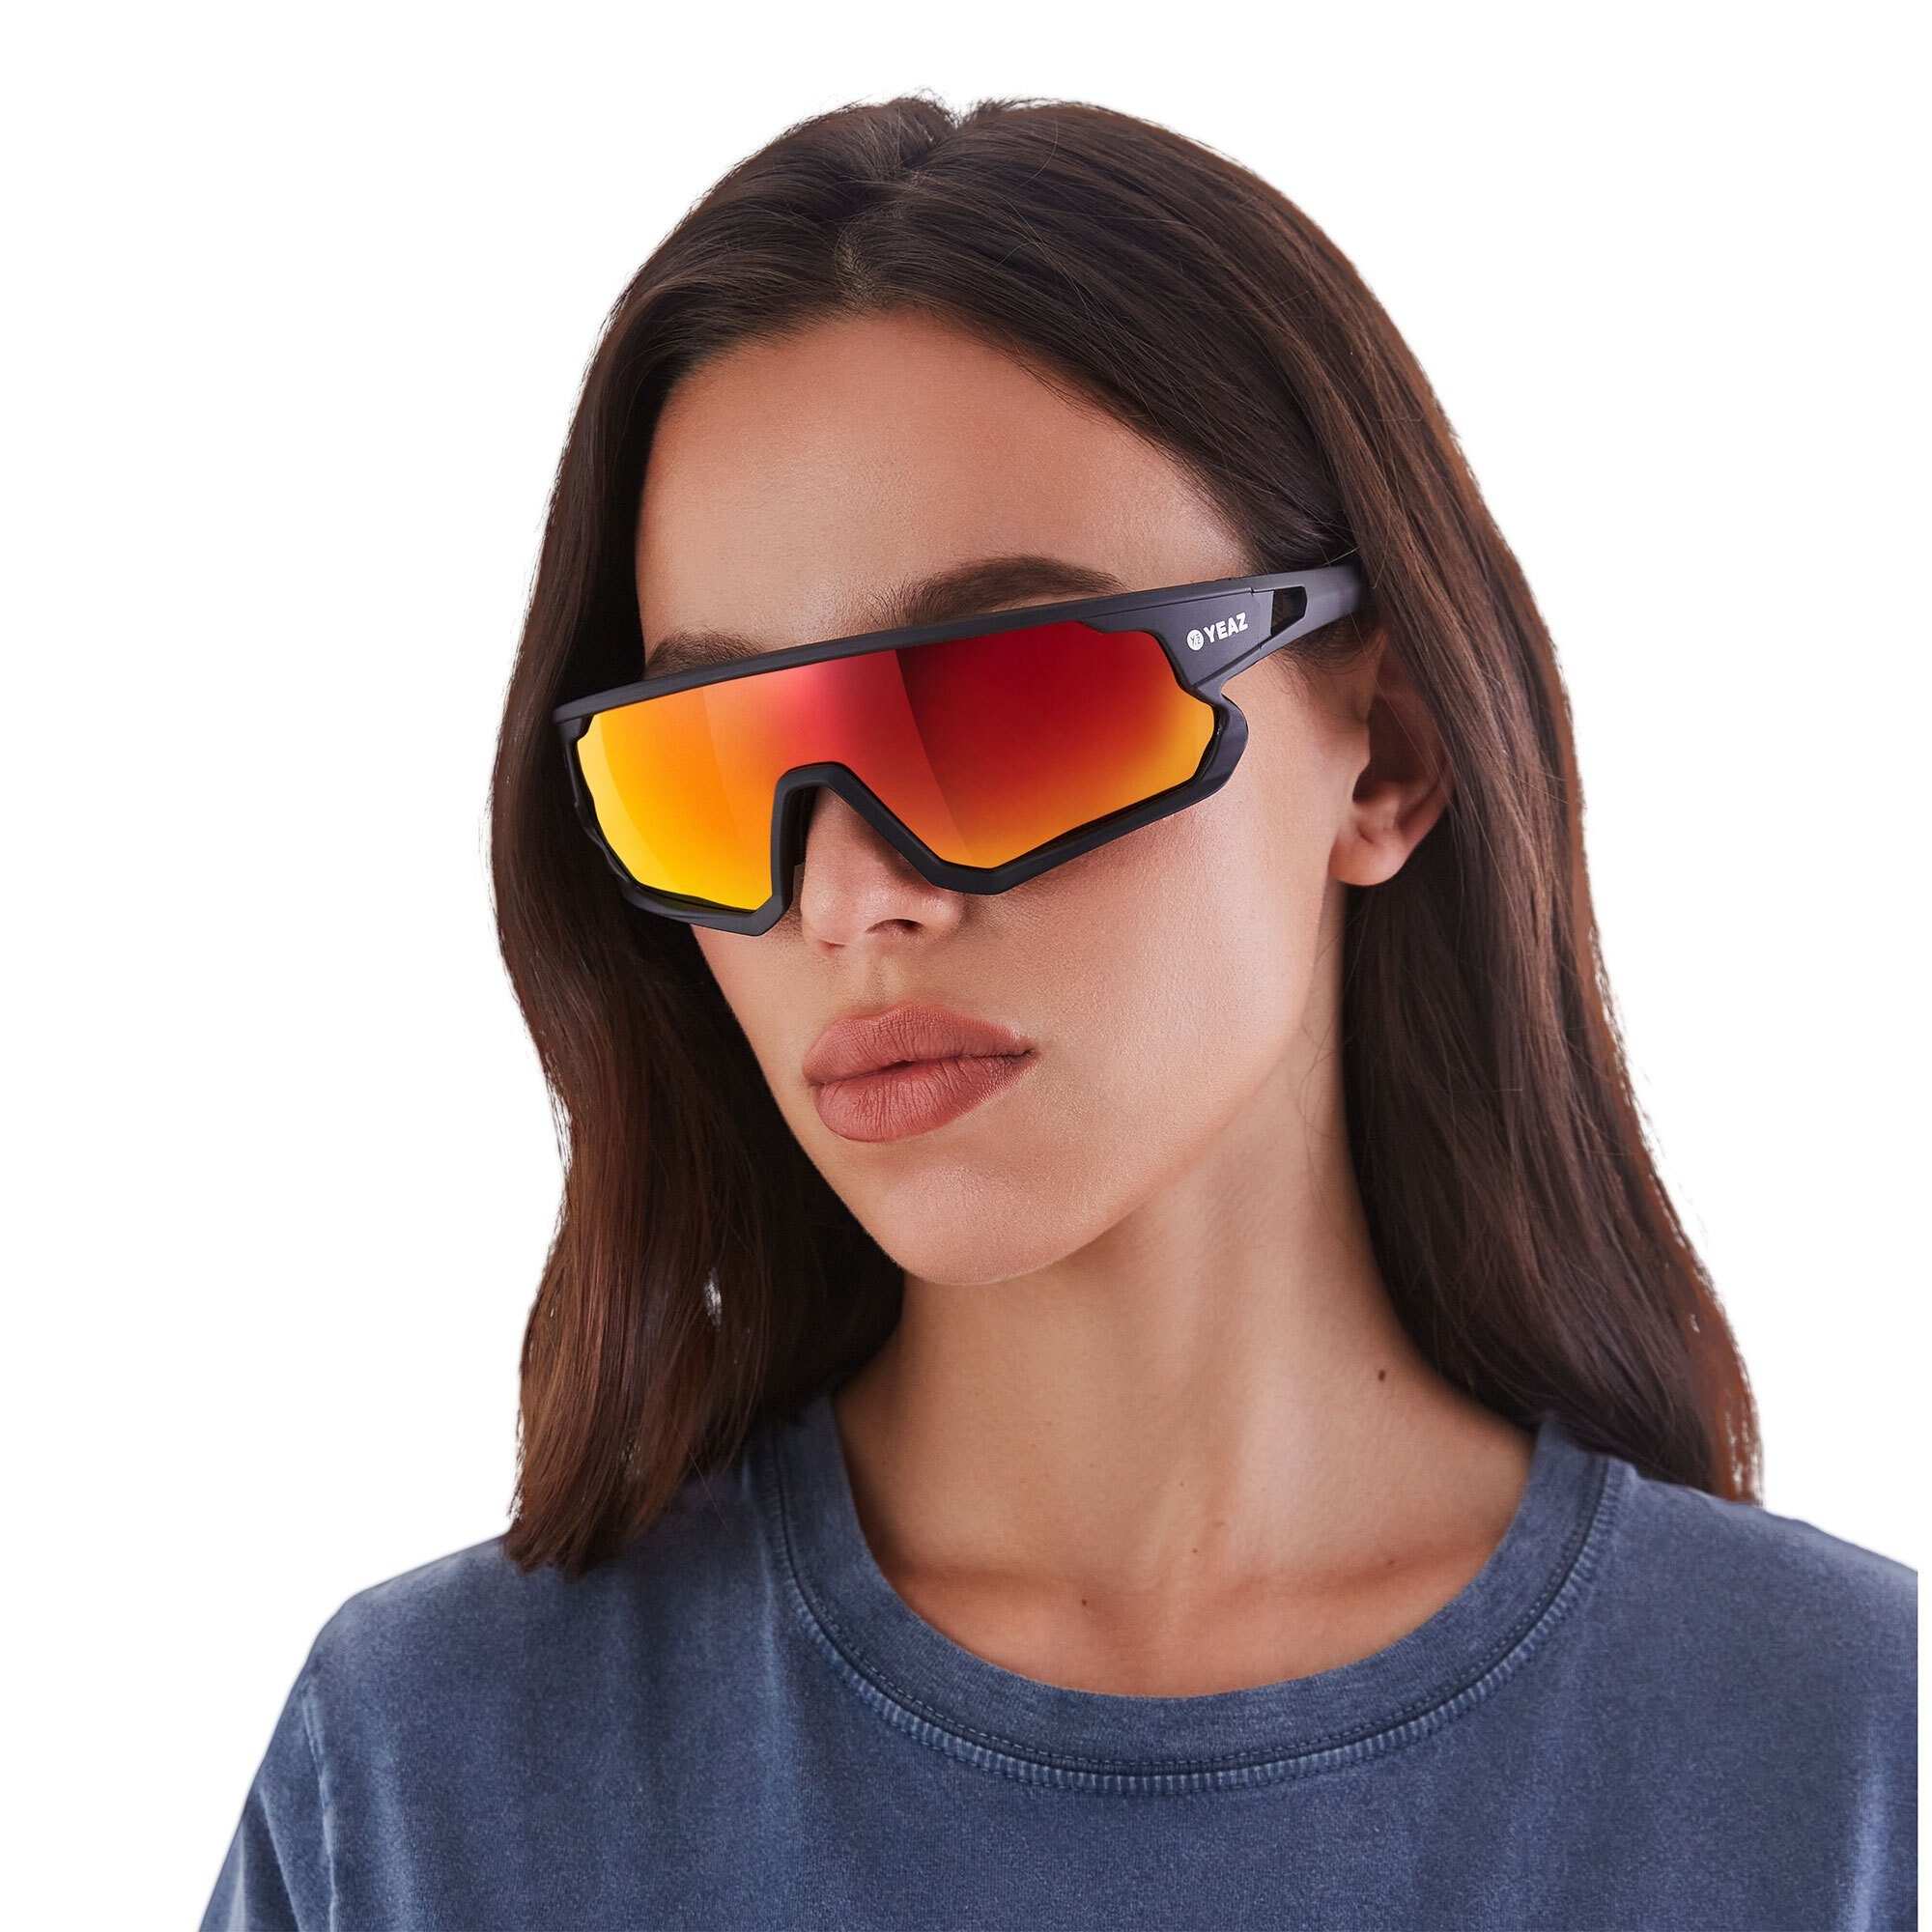 Sicht sport-sonnenbrille SUNRISE Guter Sportbrille black/red, YEAZ bei optimierter Schutz